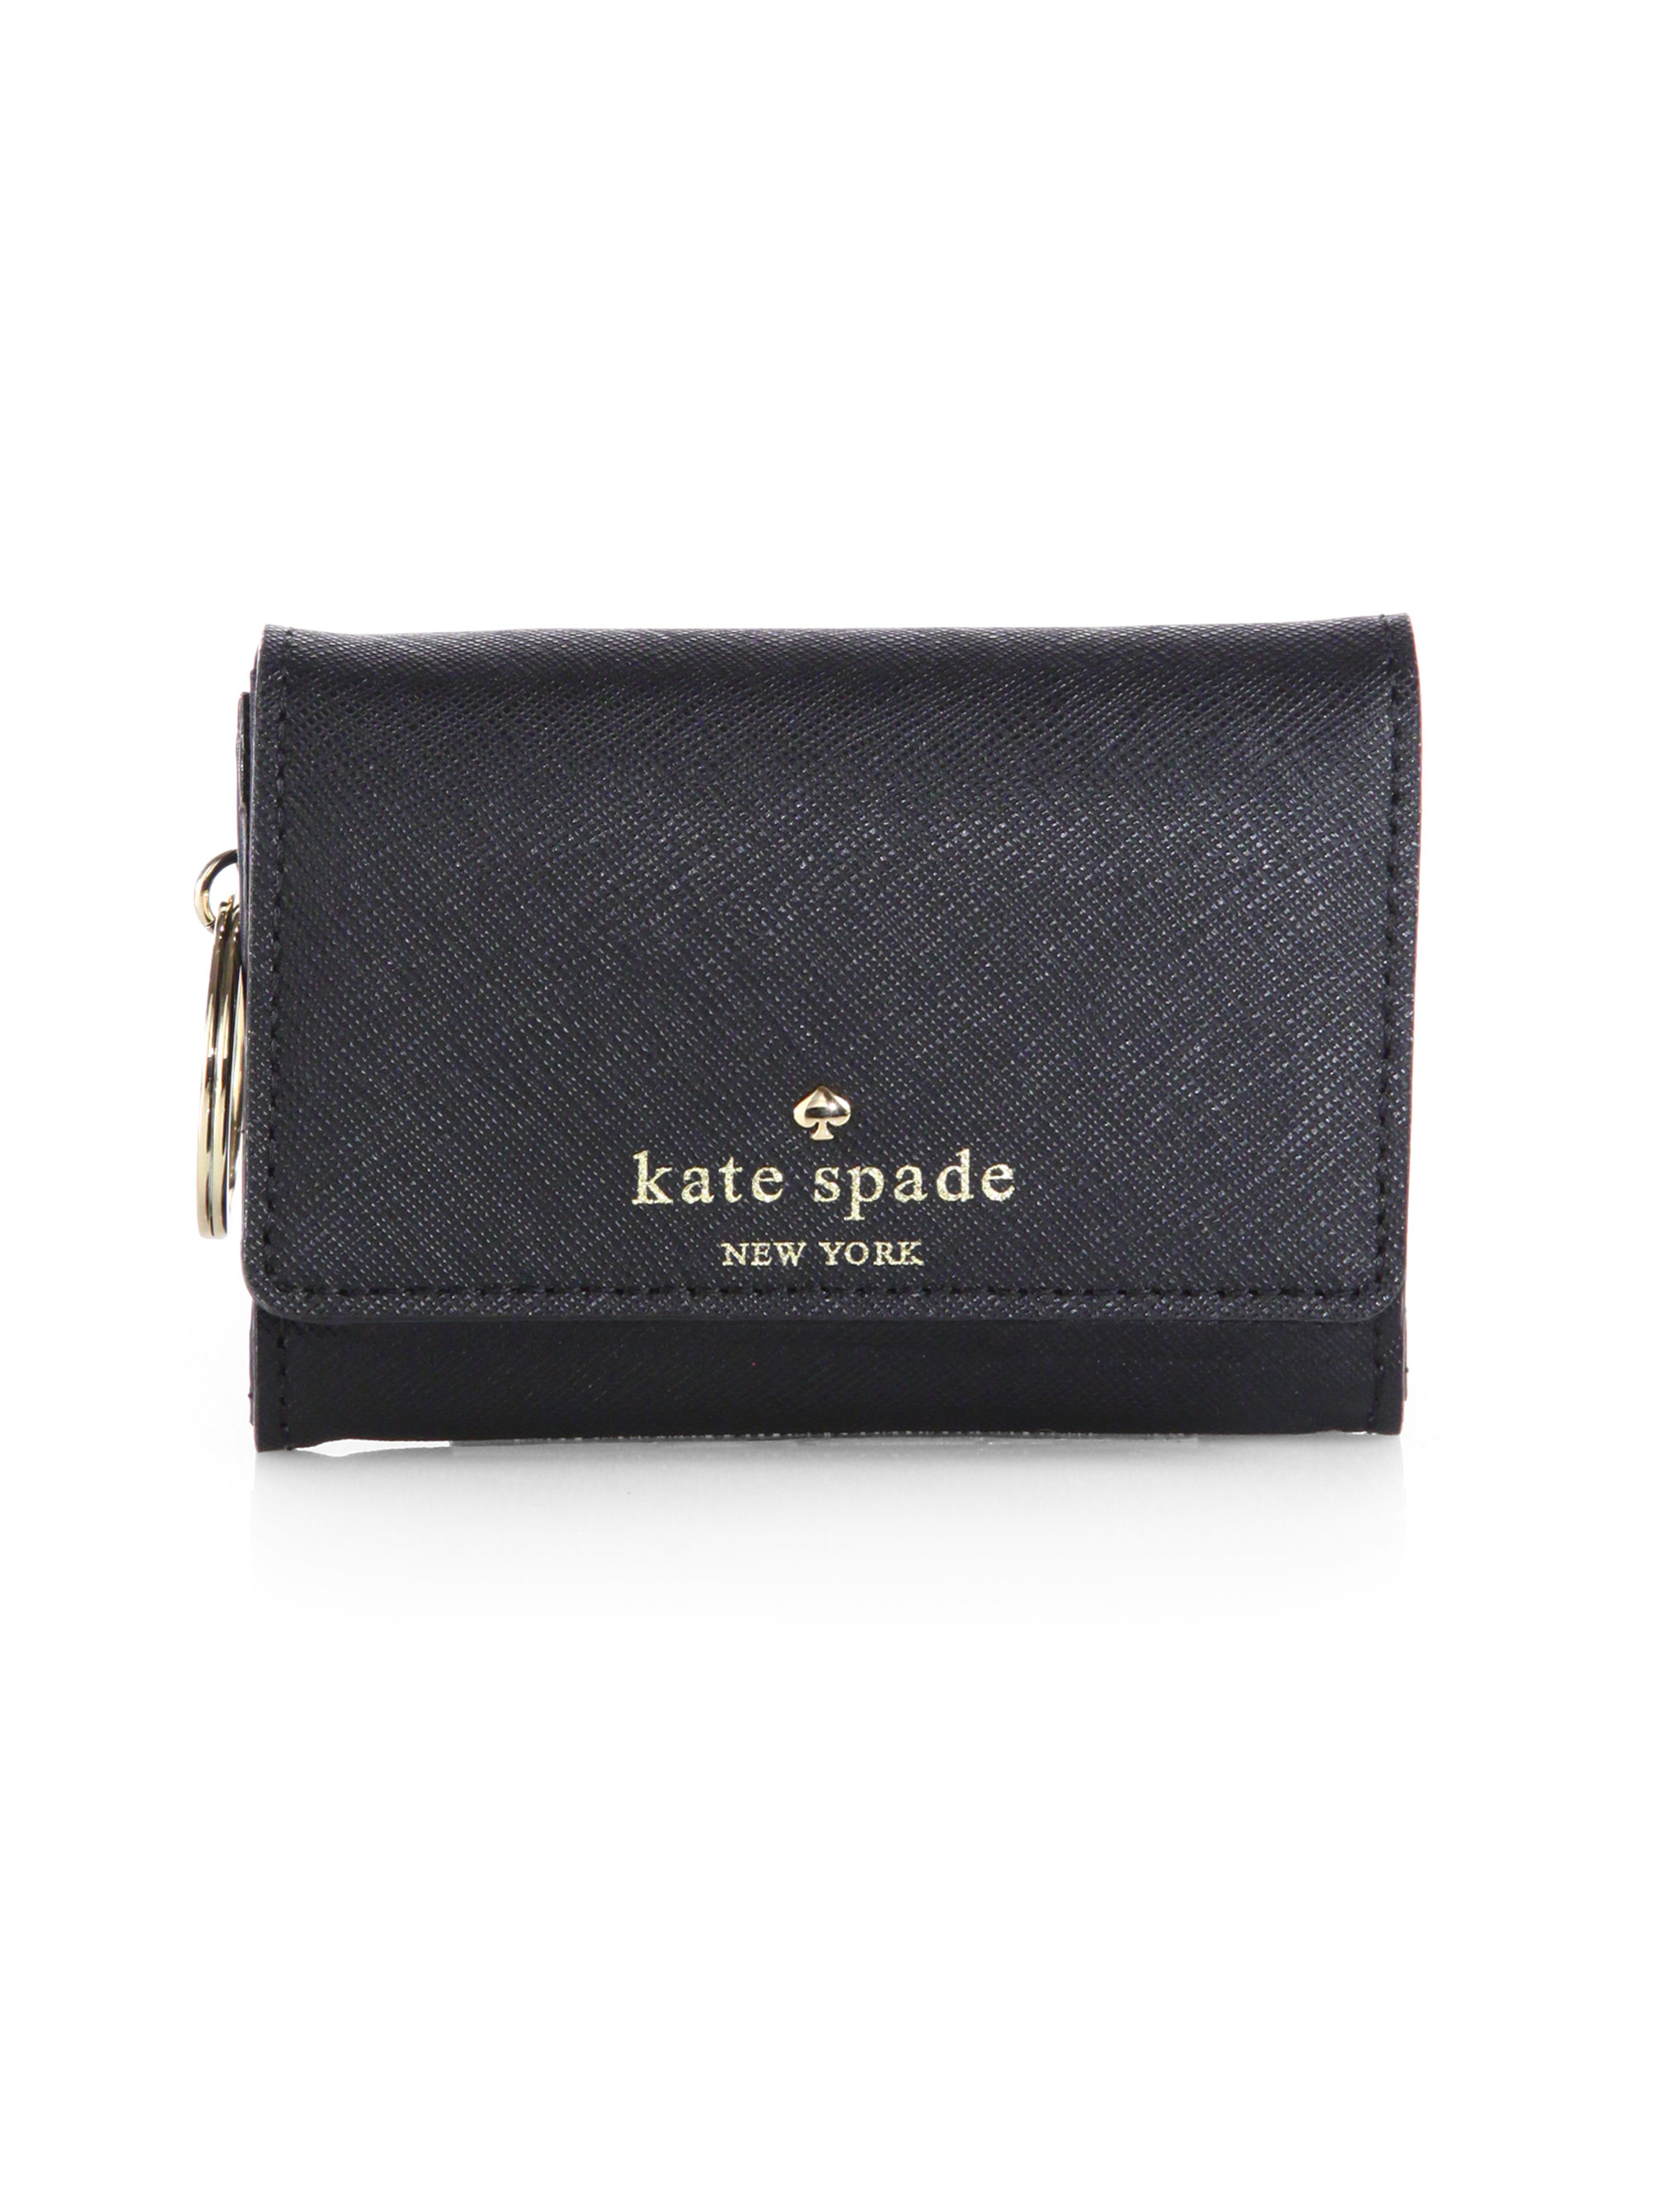 Kate Spade Cherry Lane Small Darla Wallet in Black | Lyst